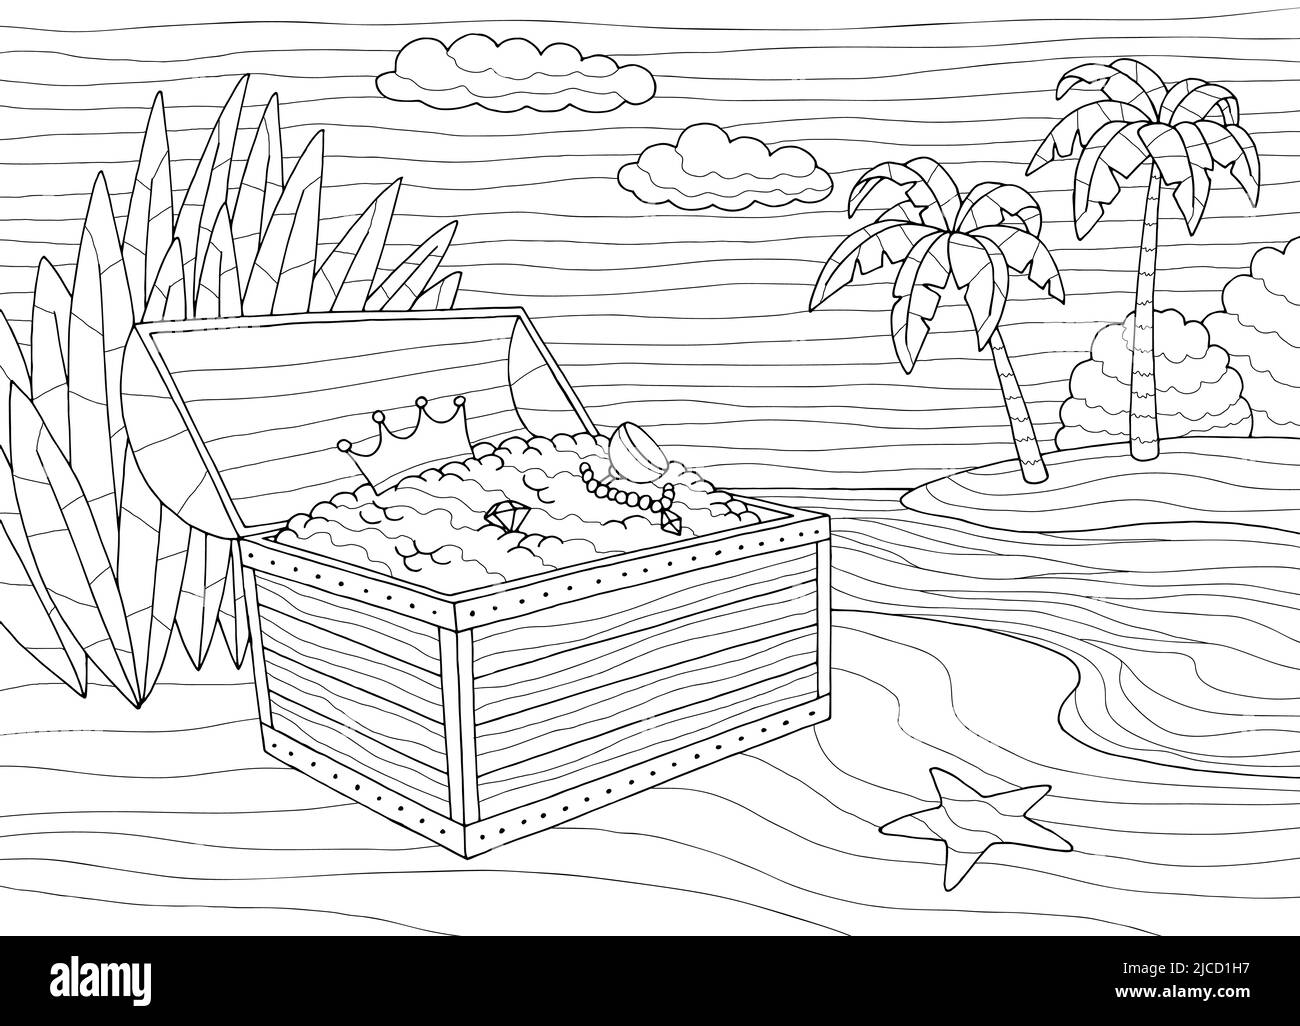 Trésor poitrine colorant mer côte graphique noir blanc paysage esquisse illustration vecteur Illustration de Vecteur